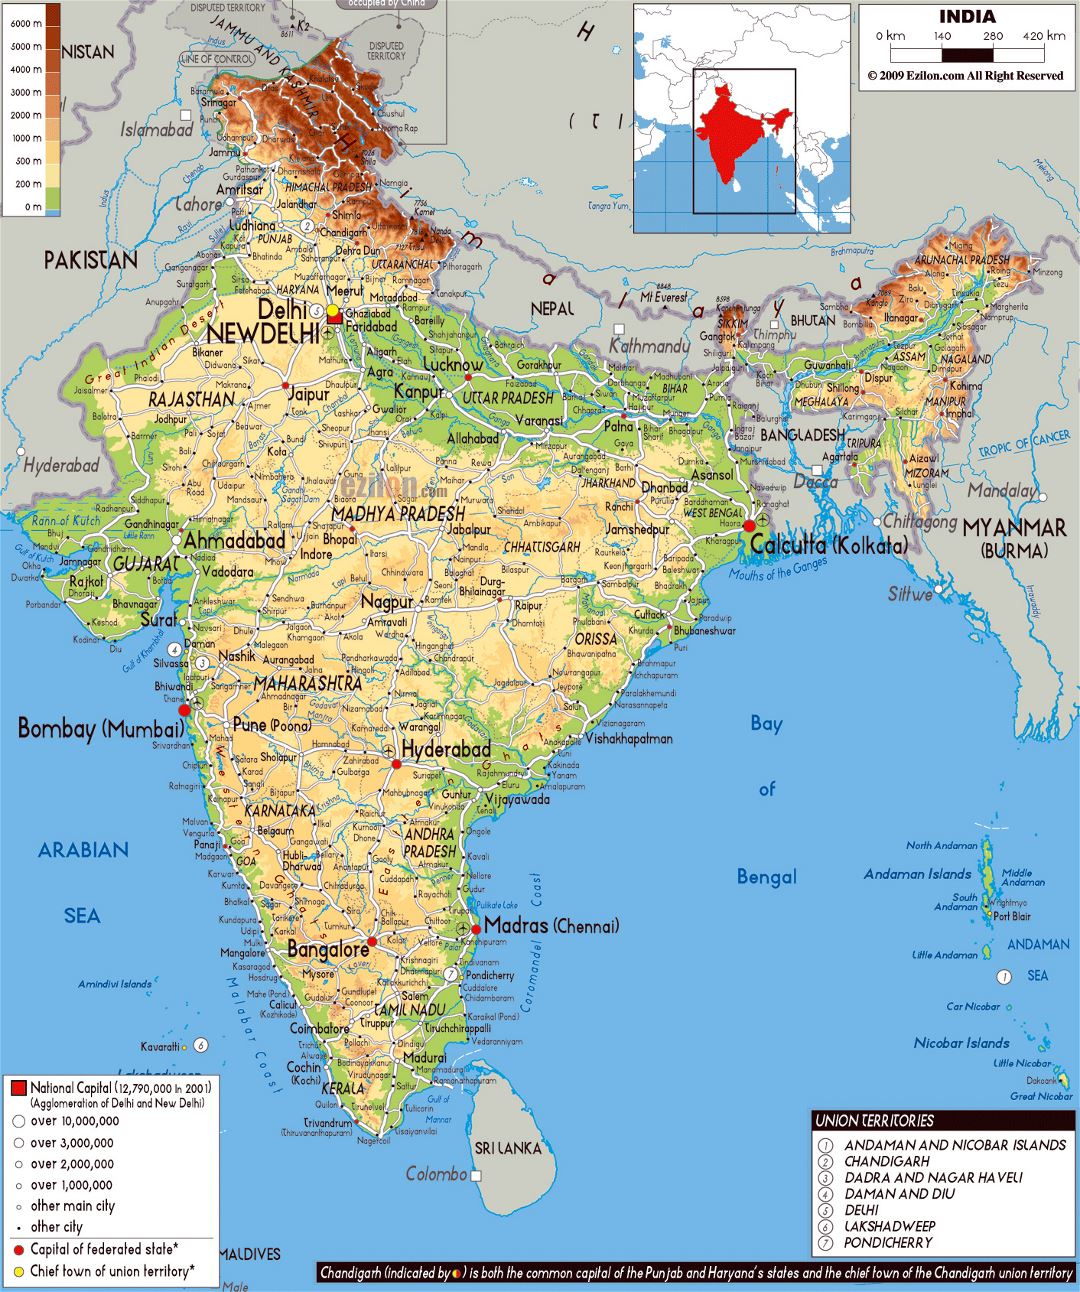 Grande mapa físico de la India con carreteras, ciudades y aeropuertos